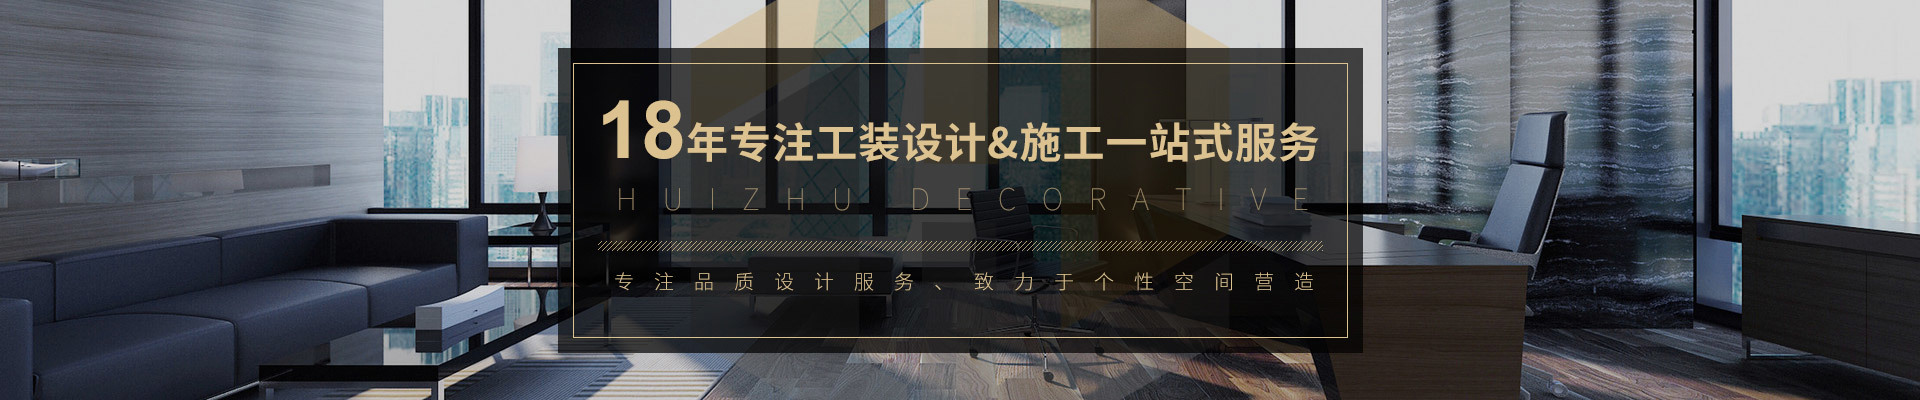 广州市巨赢装饰材料有限公司